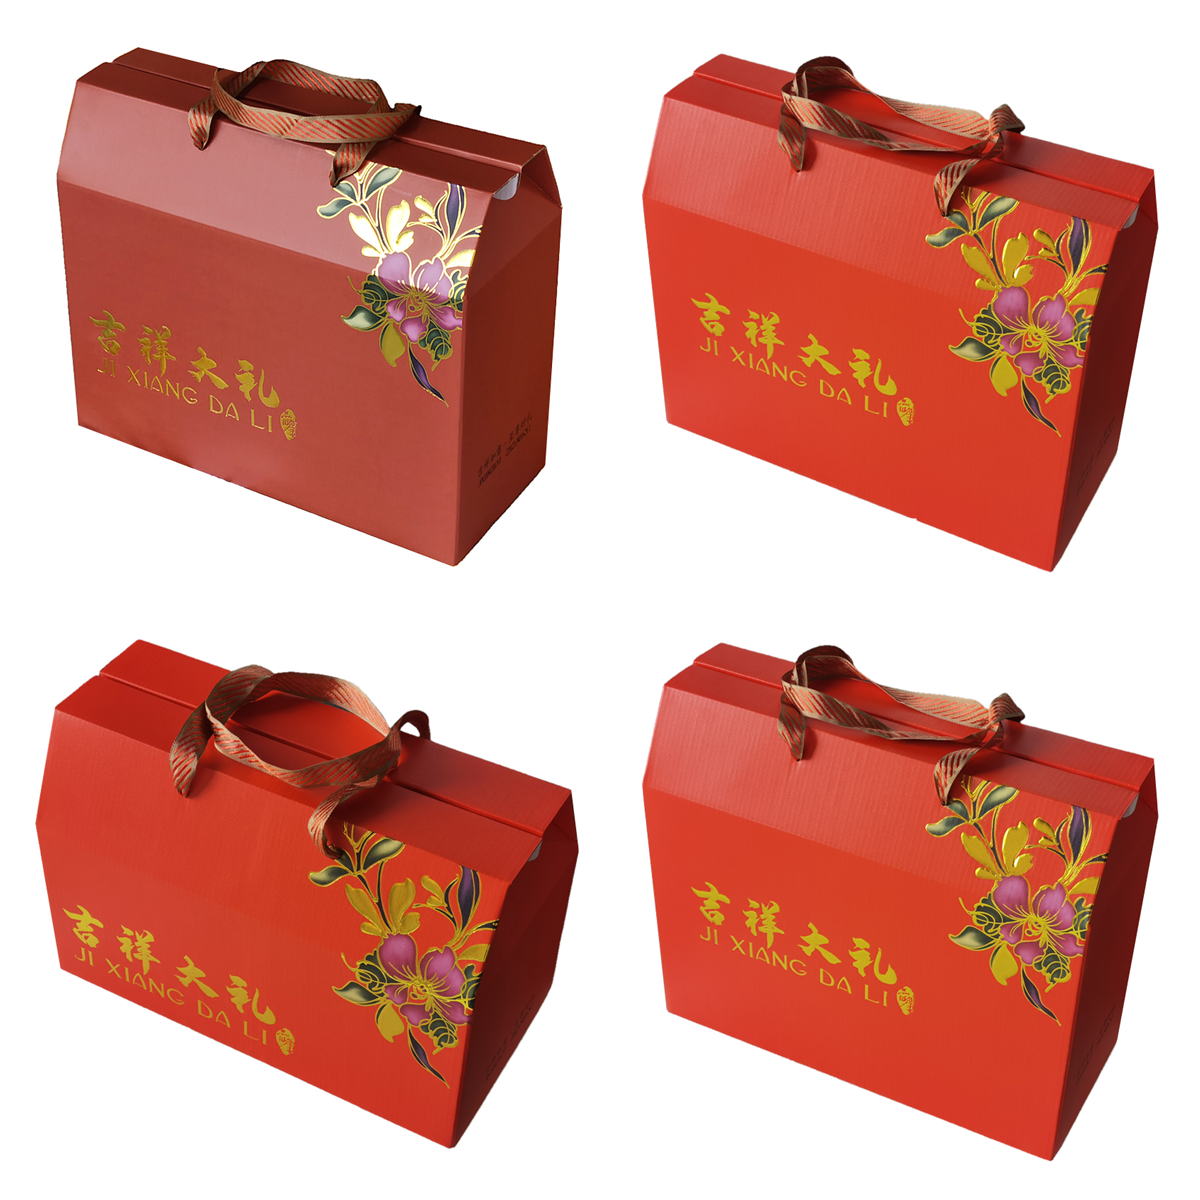 郑州纸抽盒印刷_纸抽盒印刷_哪有包装盒印刷